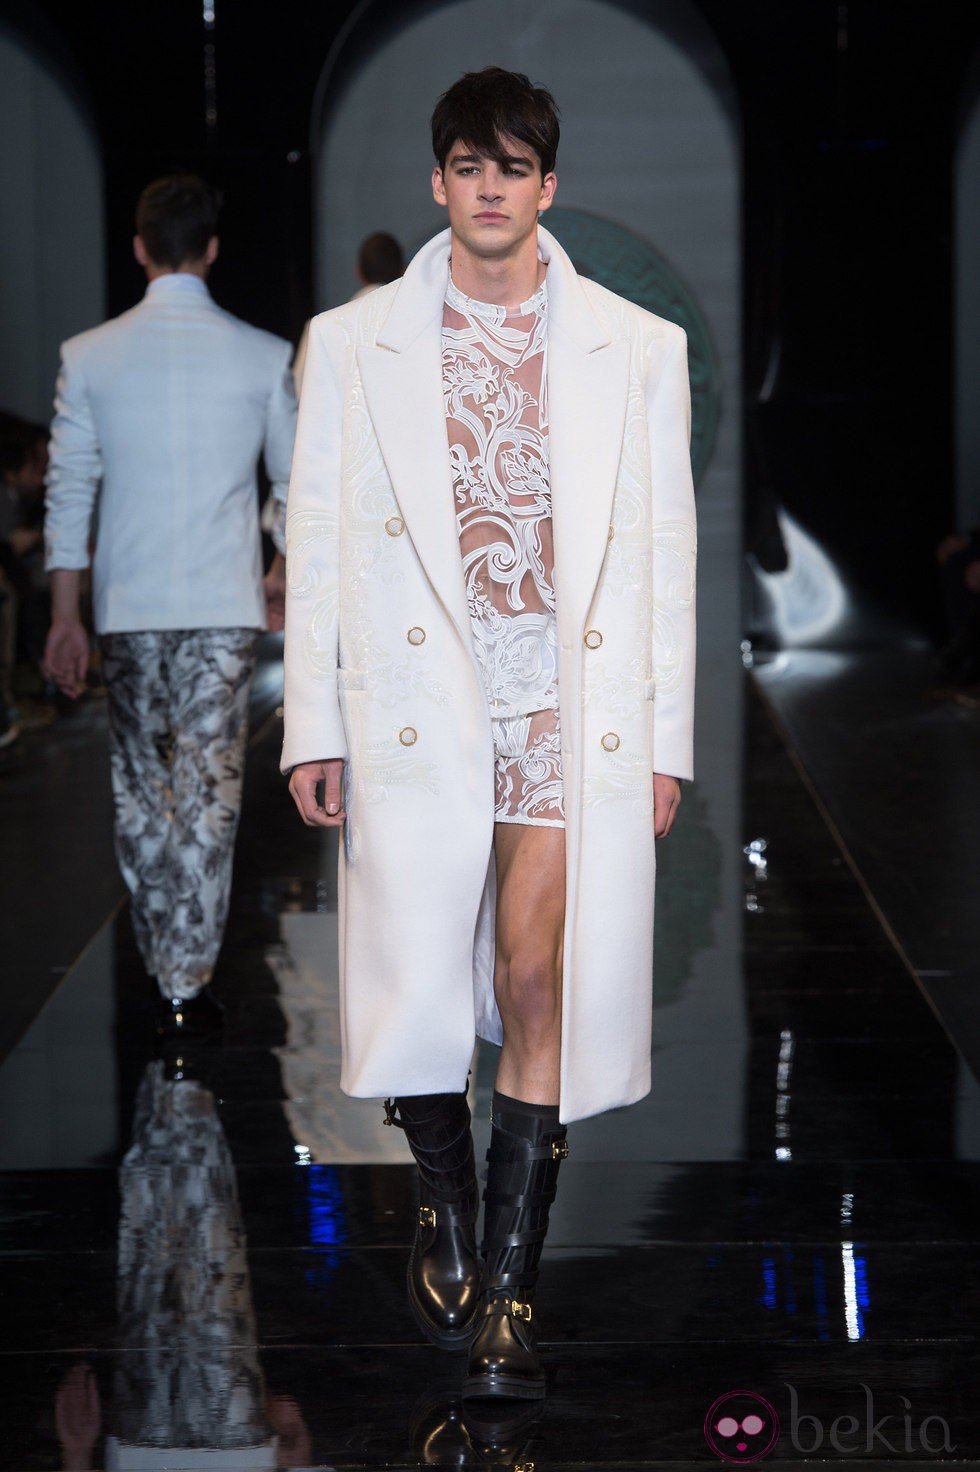 Encaje blanco en la colección otoño/invierno 2013/2014 de Versace en la Semana de la Moda Masculina de Milán